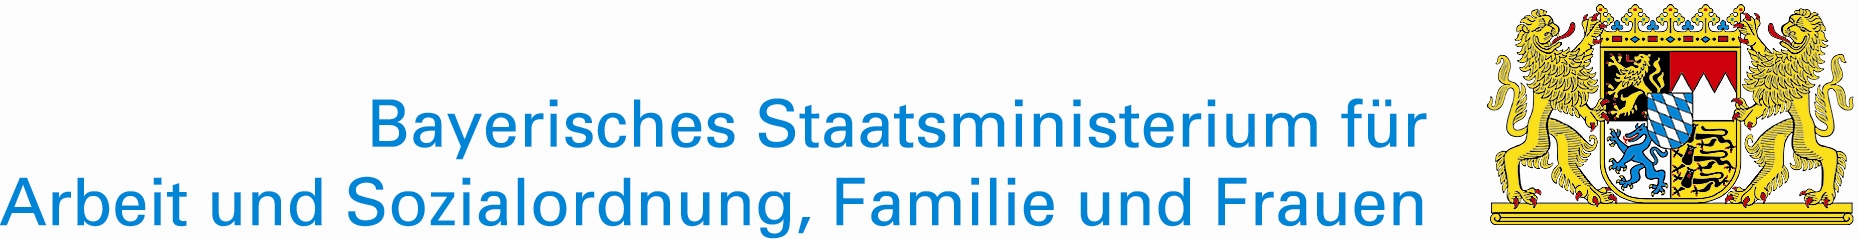 Logo: Bayerisches Staatsministerium für Arbeit und Sozialordnung, Familie und Frauen